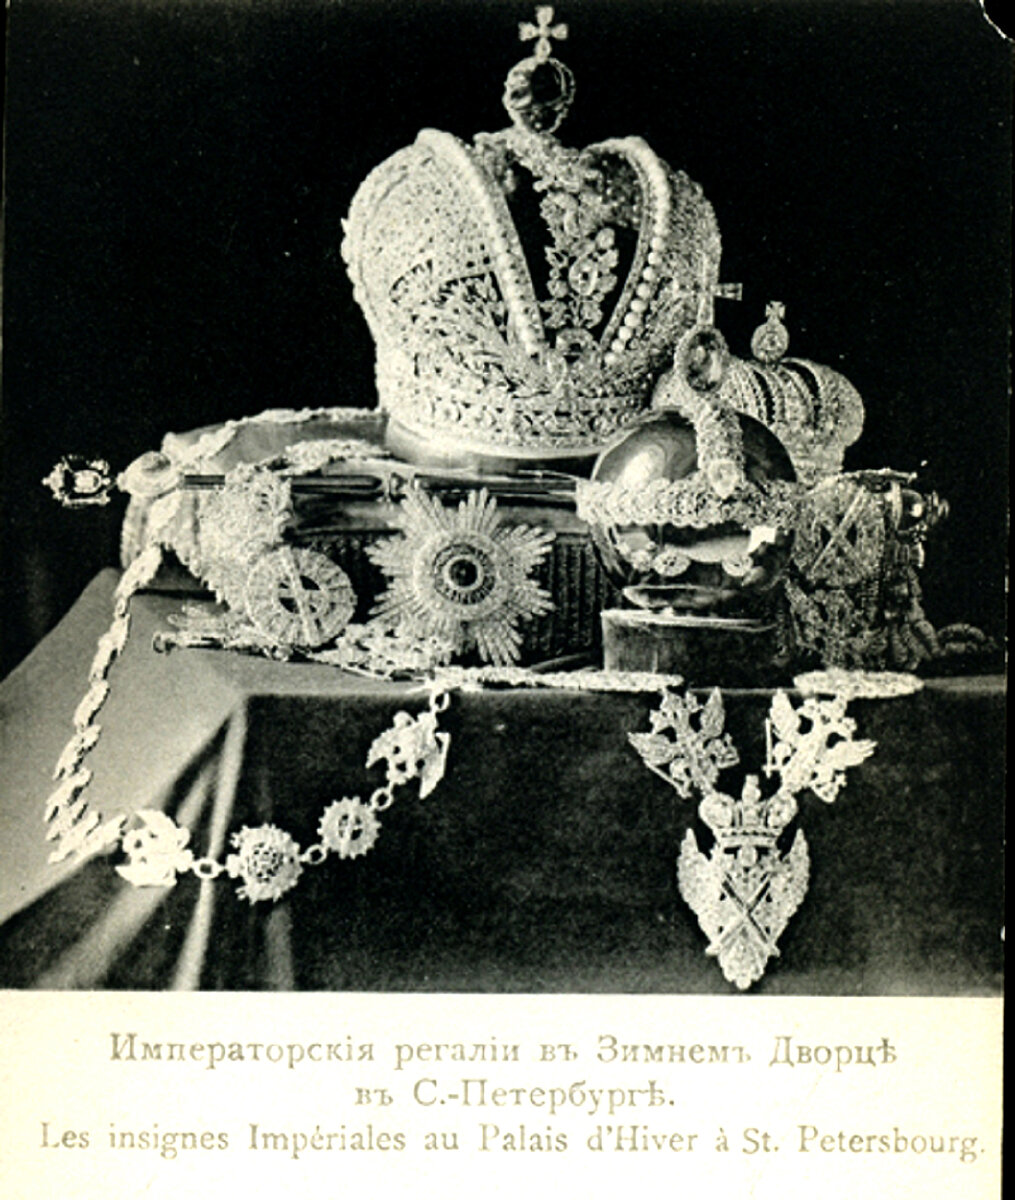 Читая о драгоценностях императорской семьи часто видишь такие пояснения – эта тиара принадлежала императрице, а эта брошь короне. Что значит "принадлежит короне"?